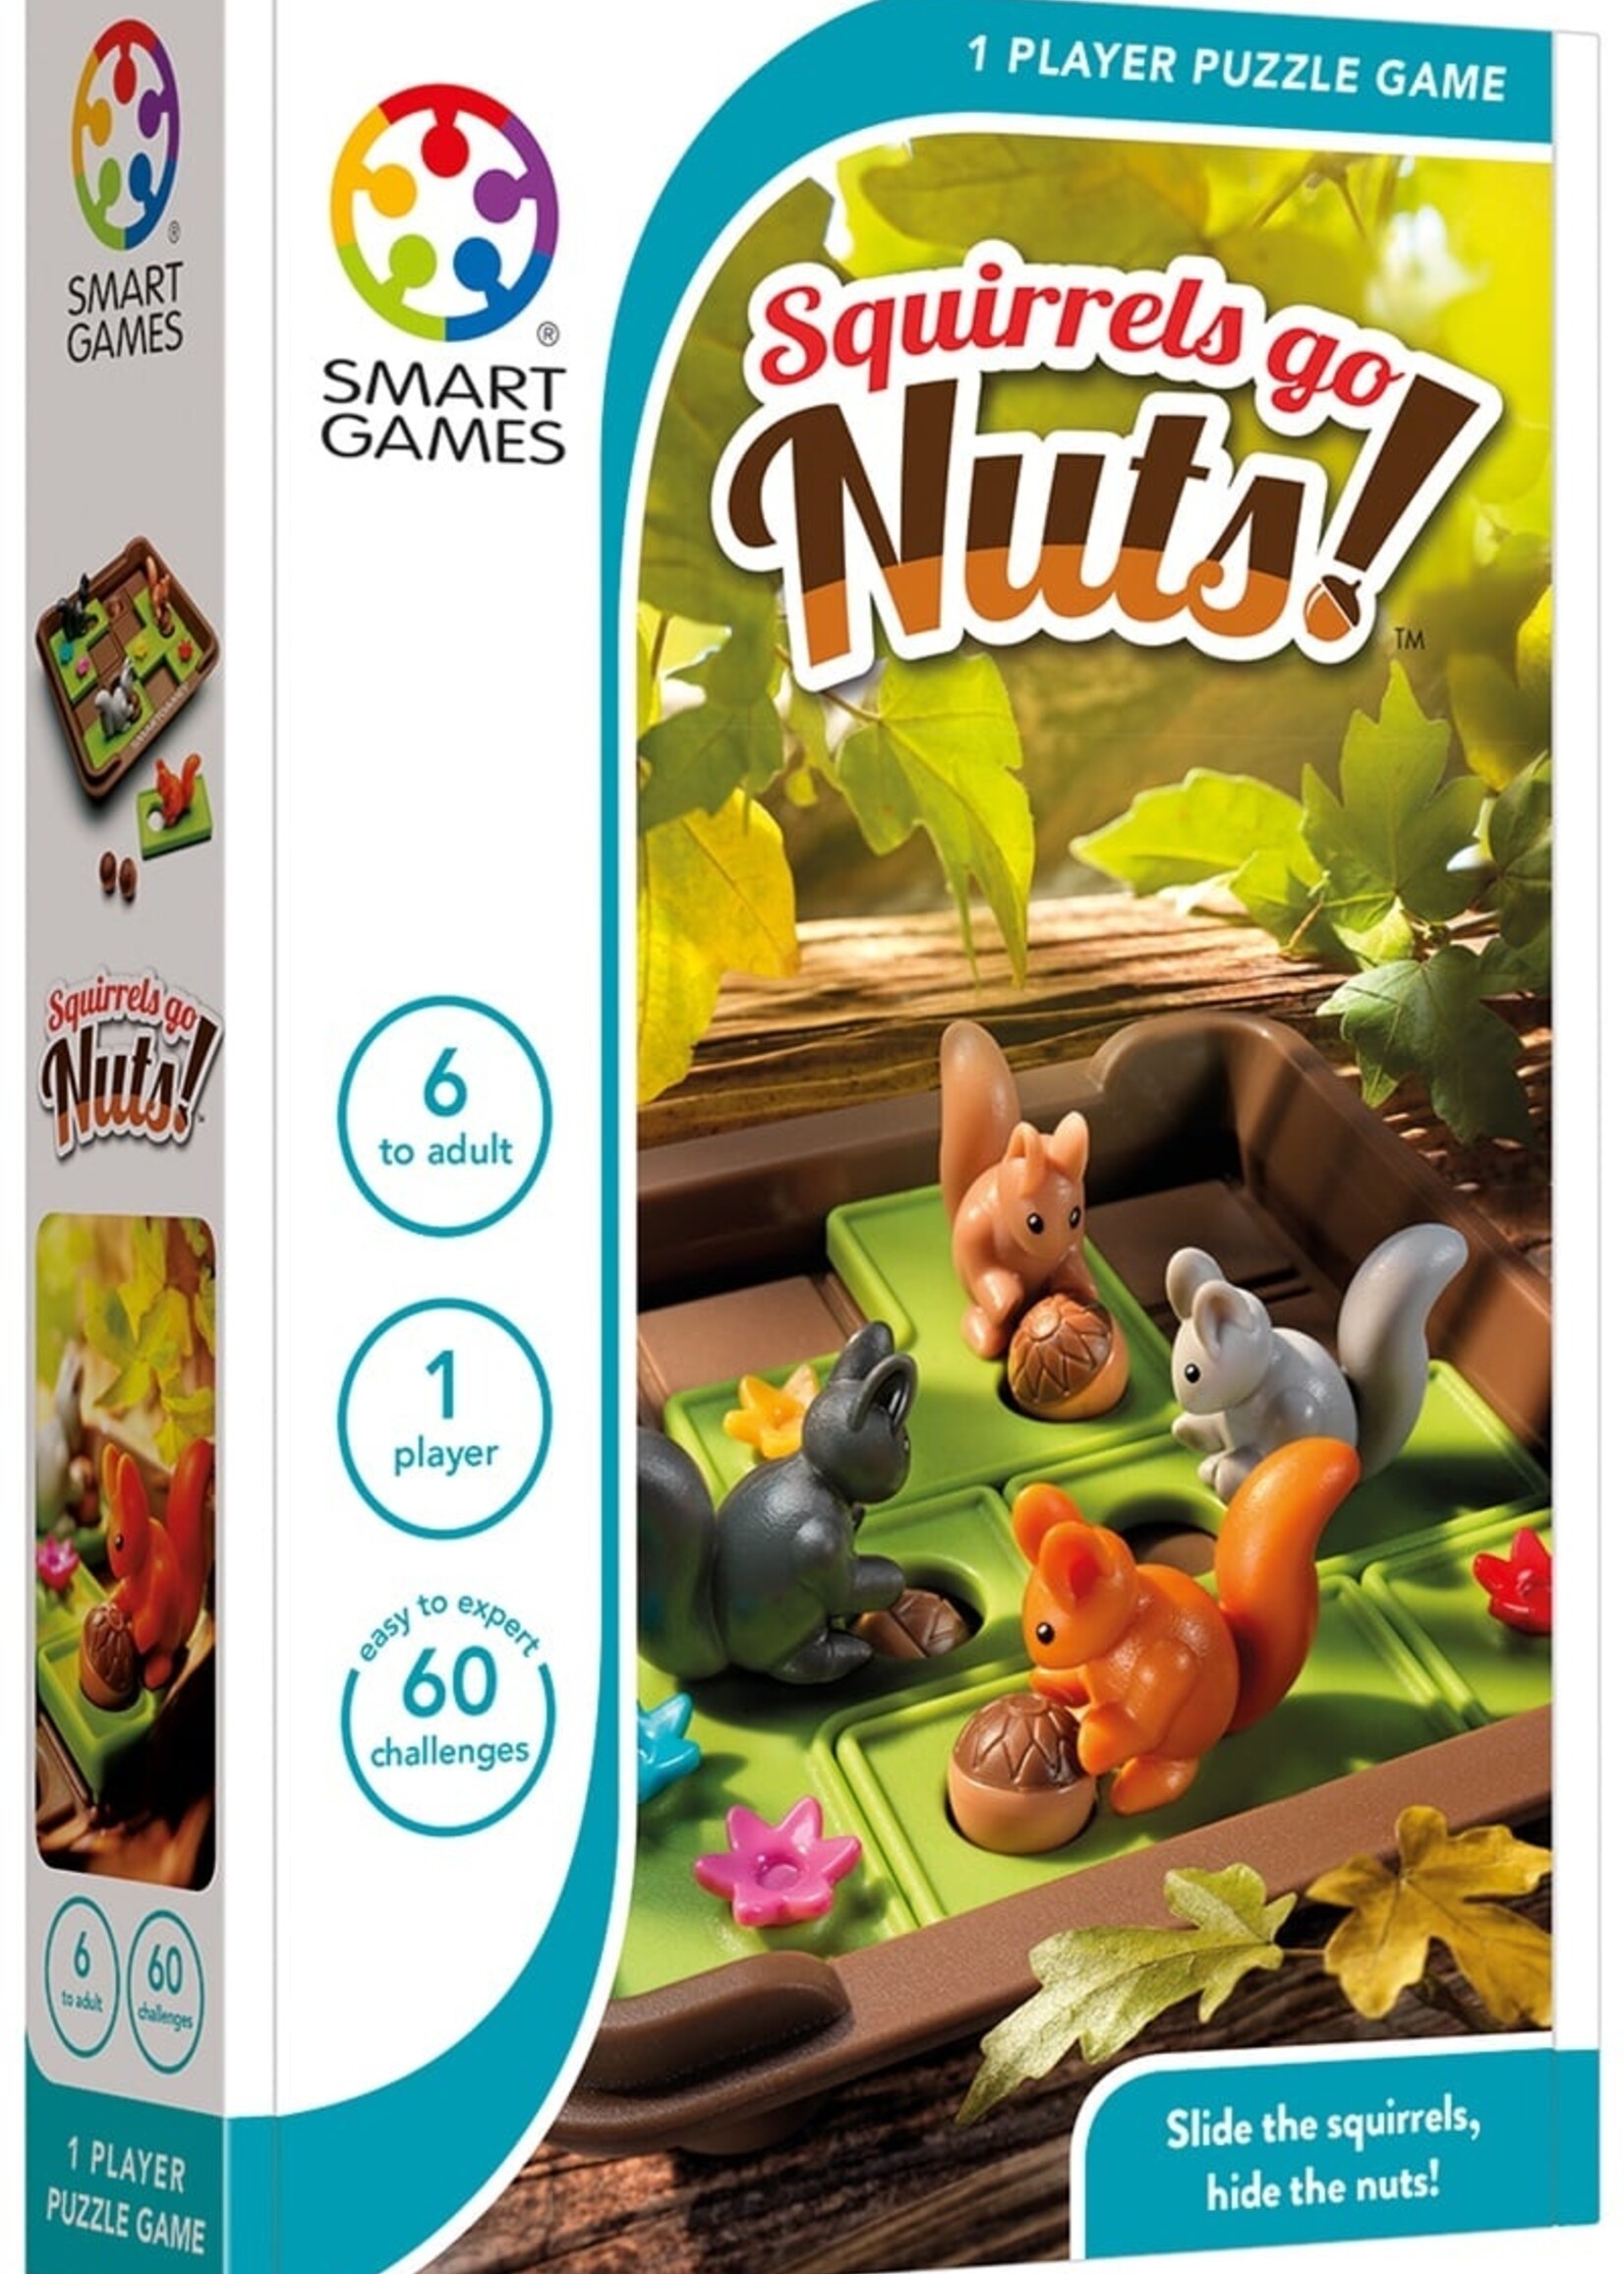 Smart Games | Squirrels Go Nuts!